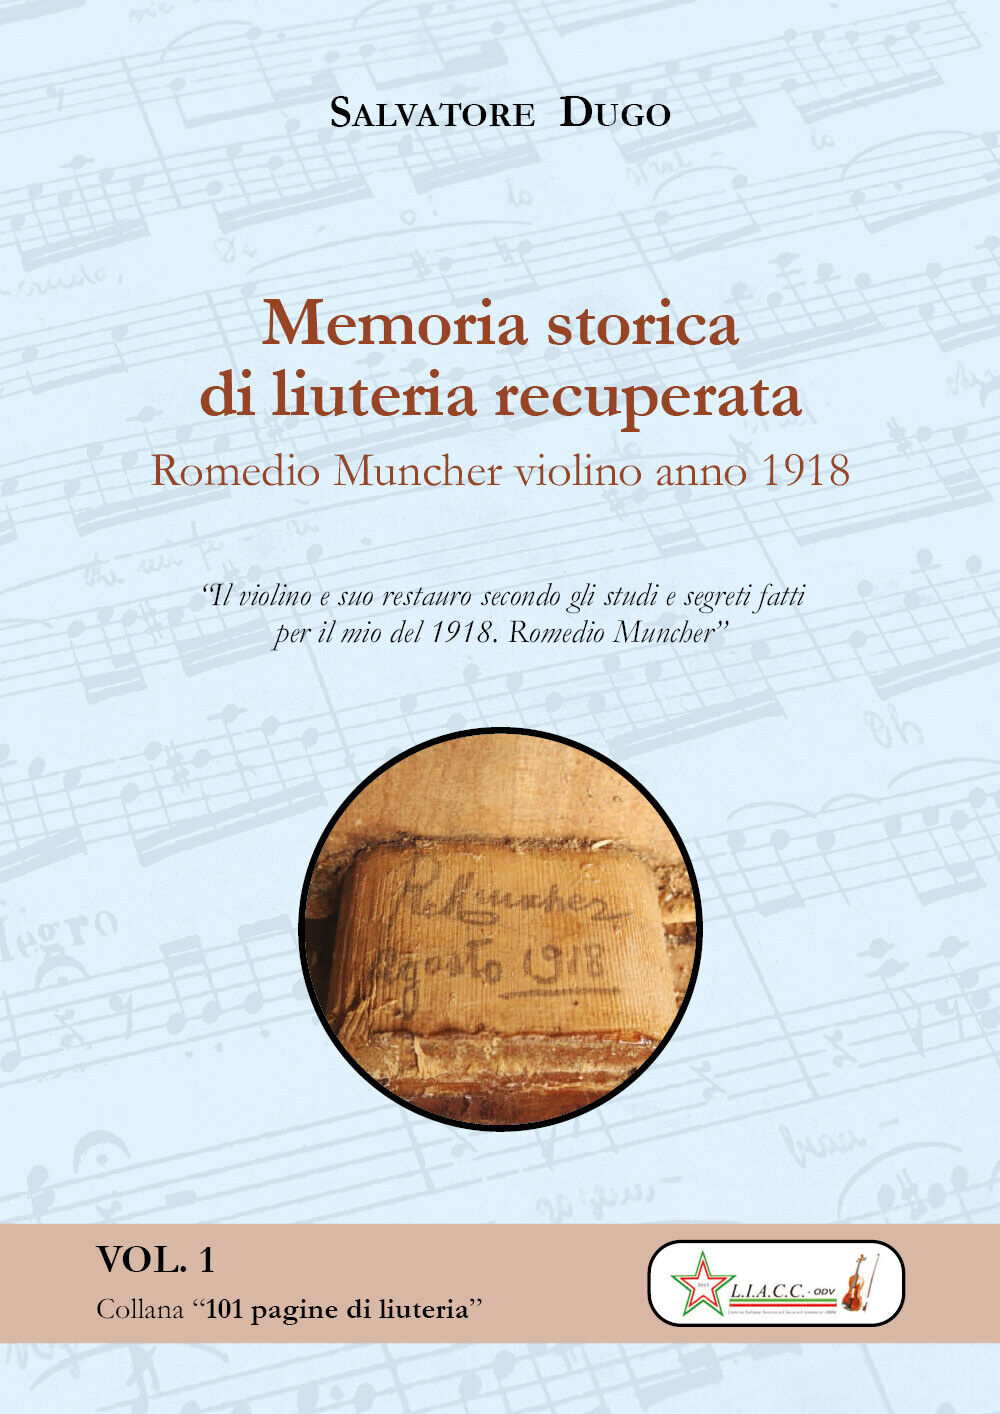 Memoria storica di liuteria recuperata. Romedio Muncher: violino 1918 di Salvato